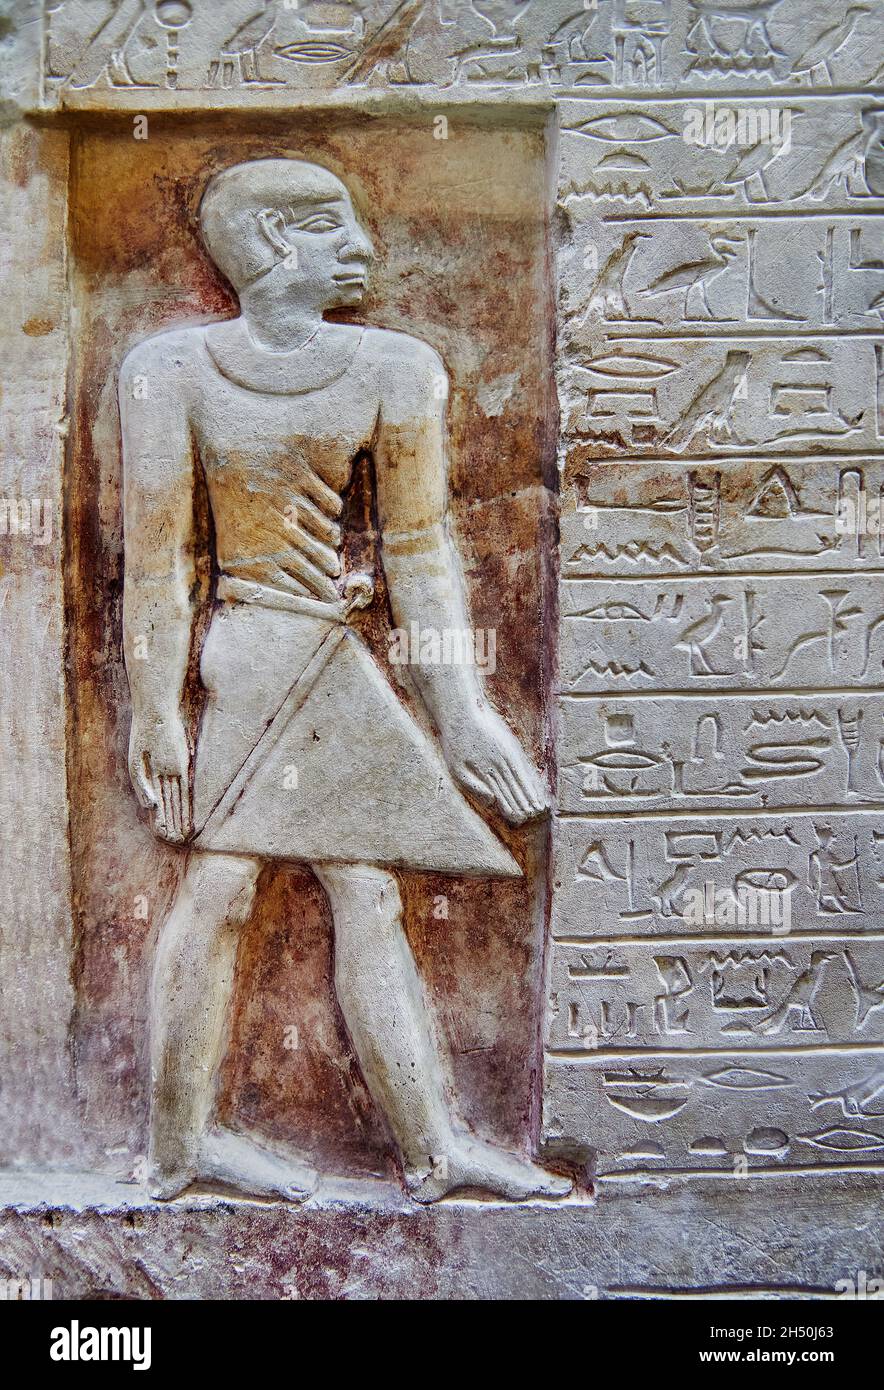 Alte ägyptische Stele von Imenseneb, Kontrolleur Abydos, 1750 v. Chr., 13. Dynastie. Louvre Museum C12. Stockfoto